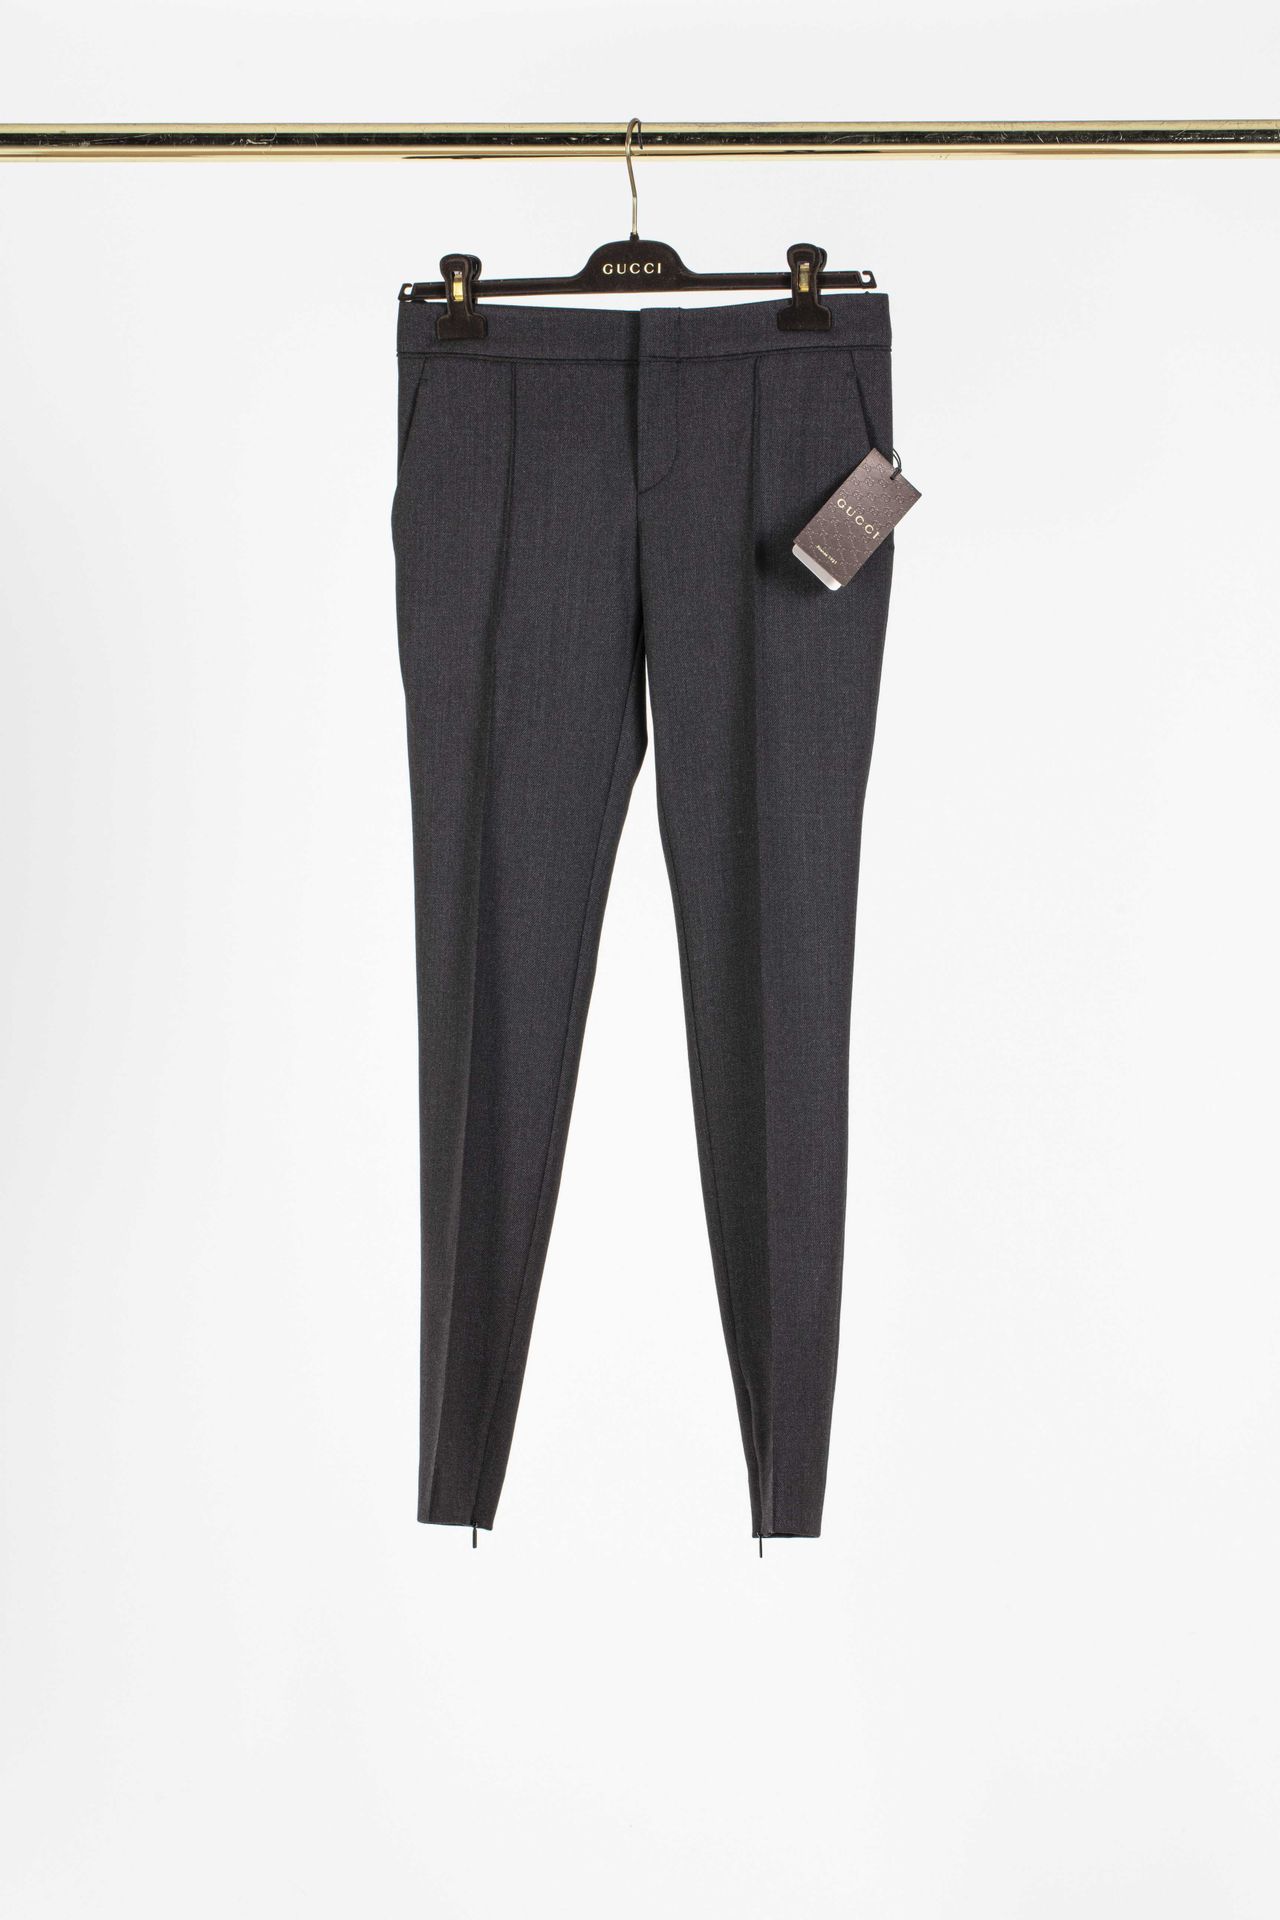 Null GUCCI：灰色涤纶长裤套装，包括直筒裤和一件带凹槽领的夹克，两个贴袋，长袖。

T.S